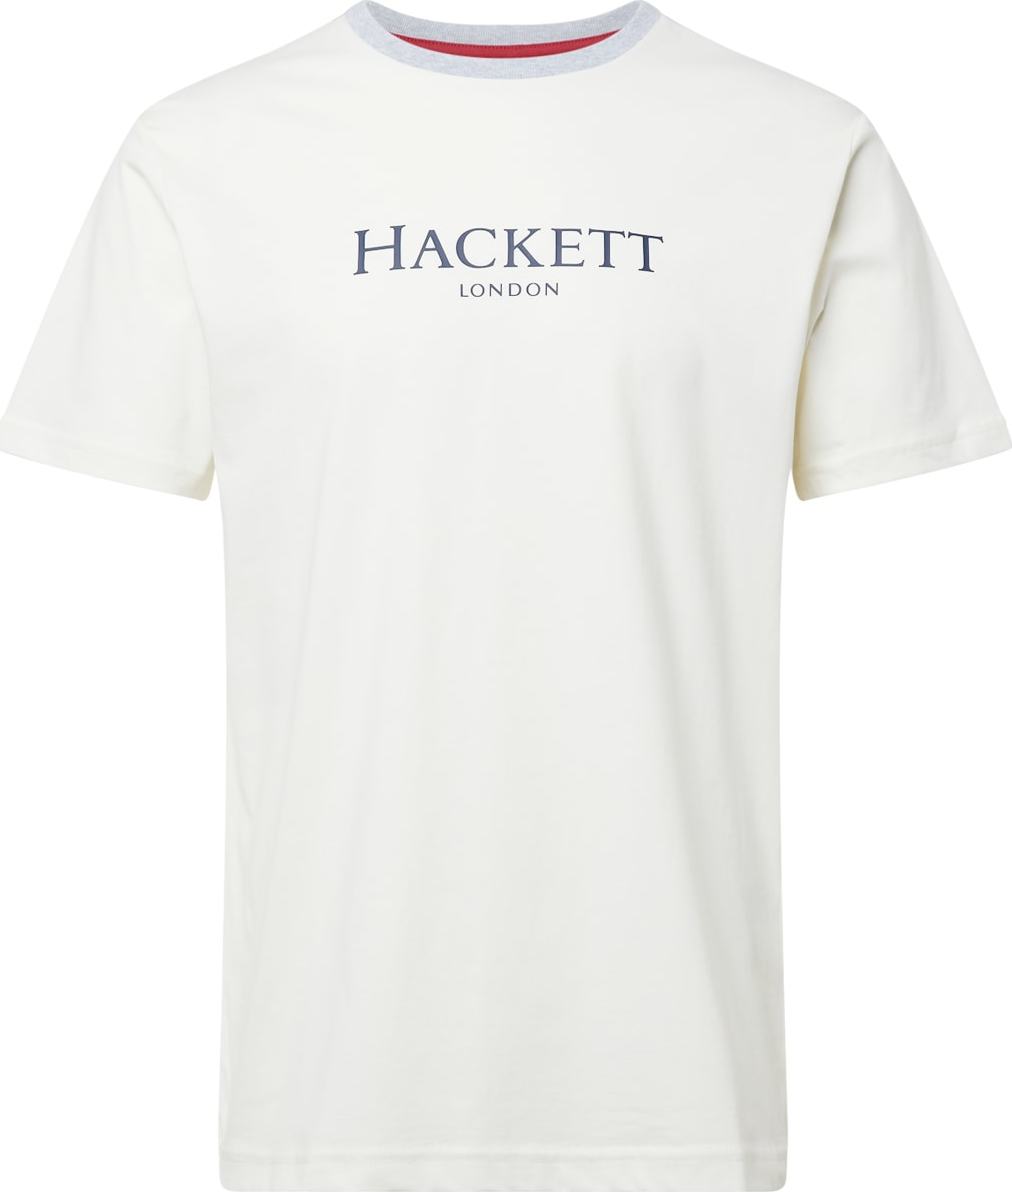 Tričko Hackett London marine modrá / šedá / bílá